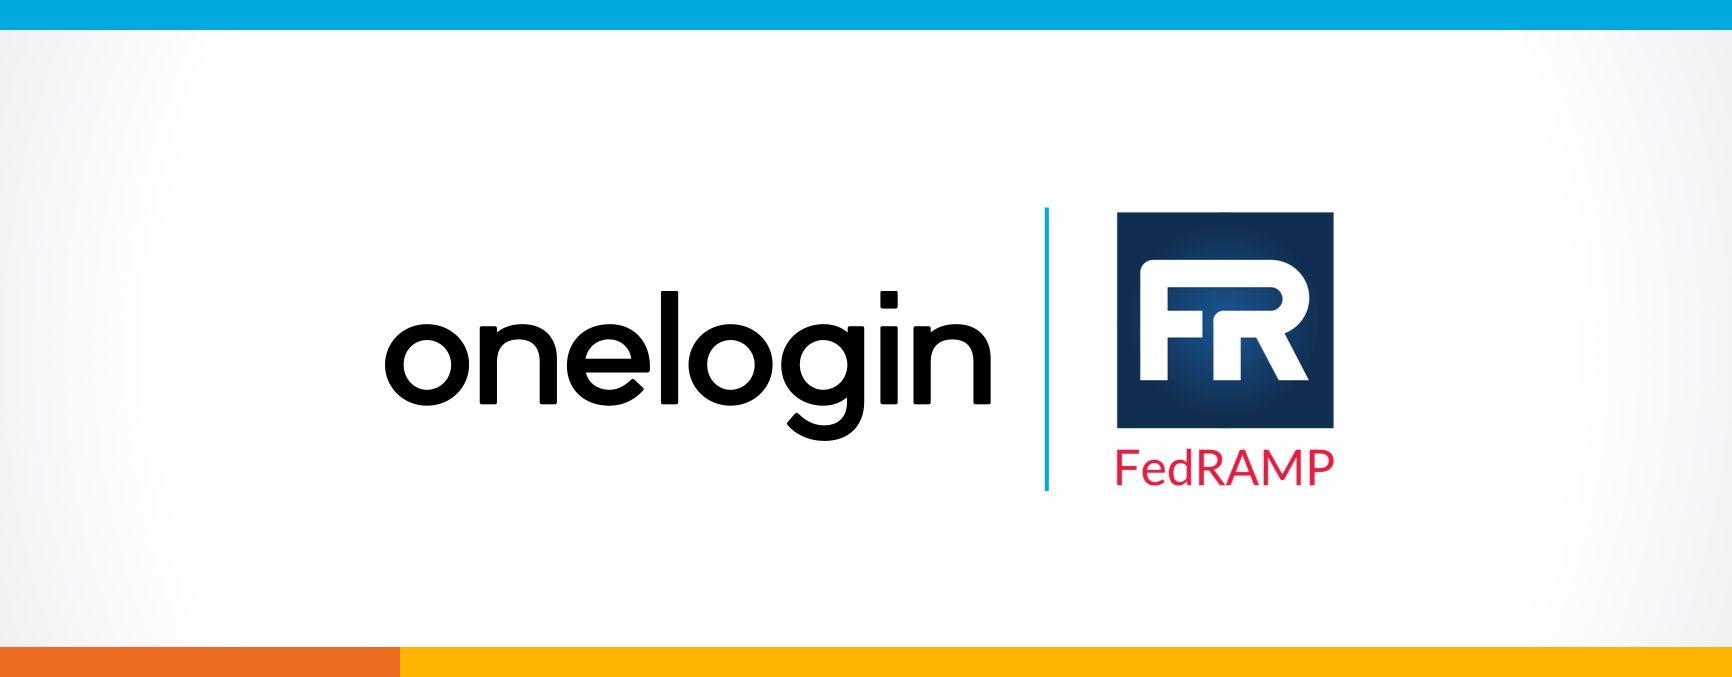 FedRAMP Logo - FedRAMP Ready Status Achieved | OneLogin Blog